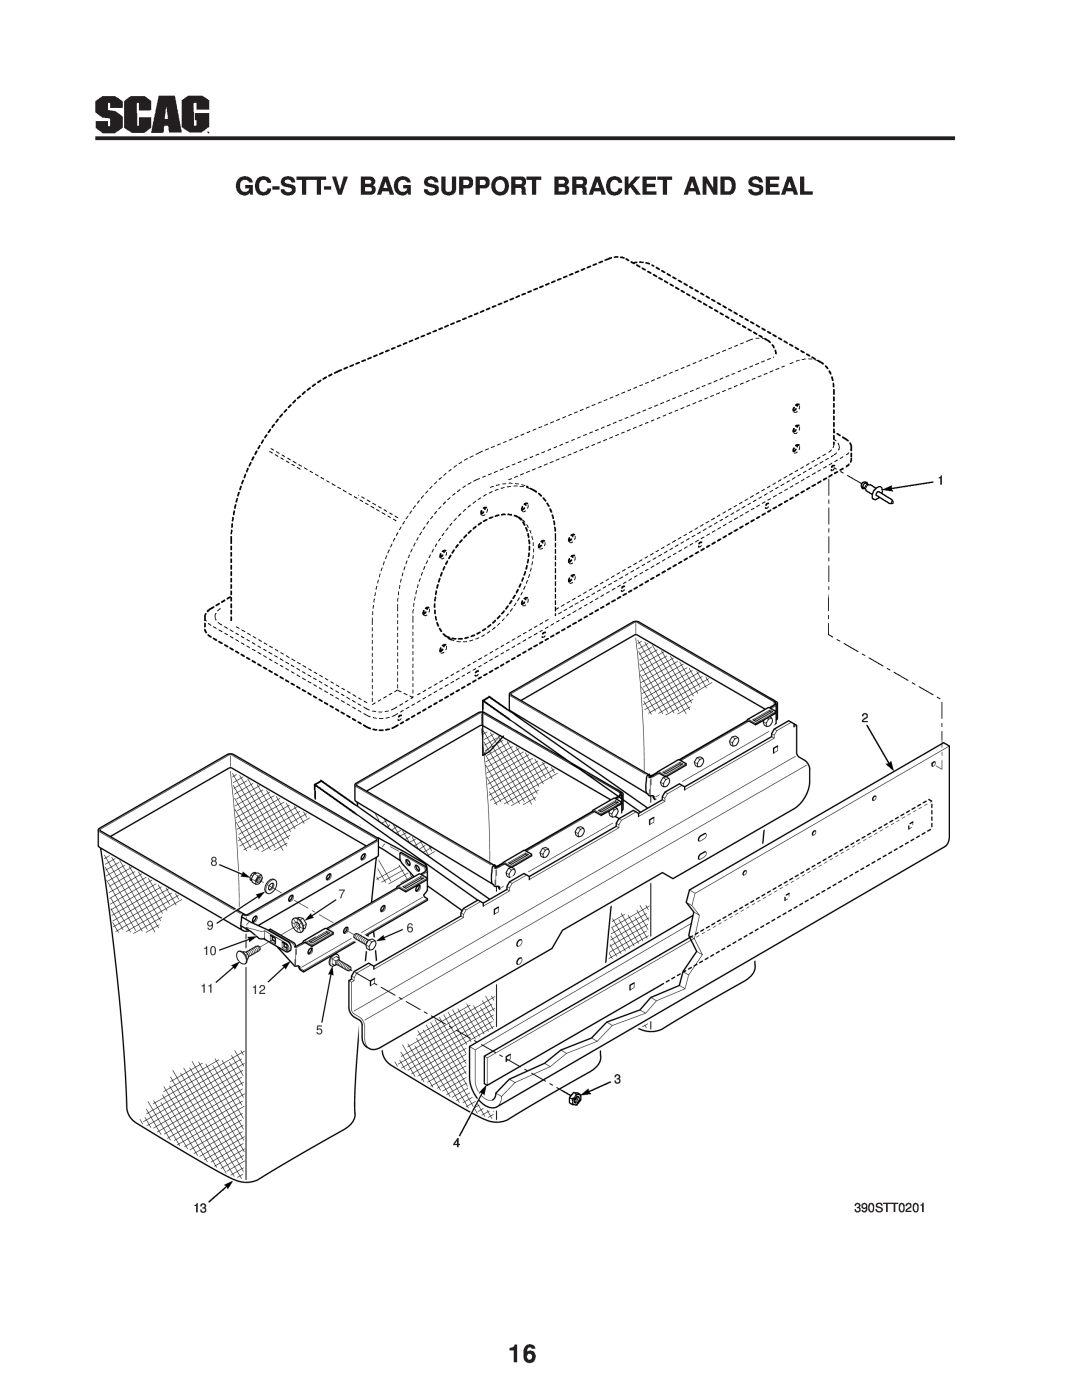 Scag Power Equipment GC-STT-V operating instructions Gc-Stt-V Bag Support Bracket And Seal, 390STT0201 